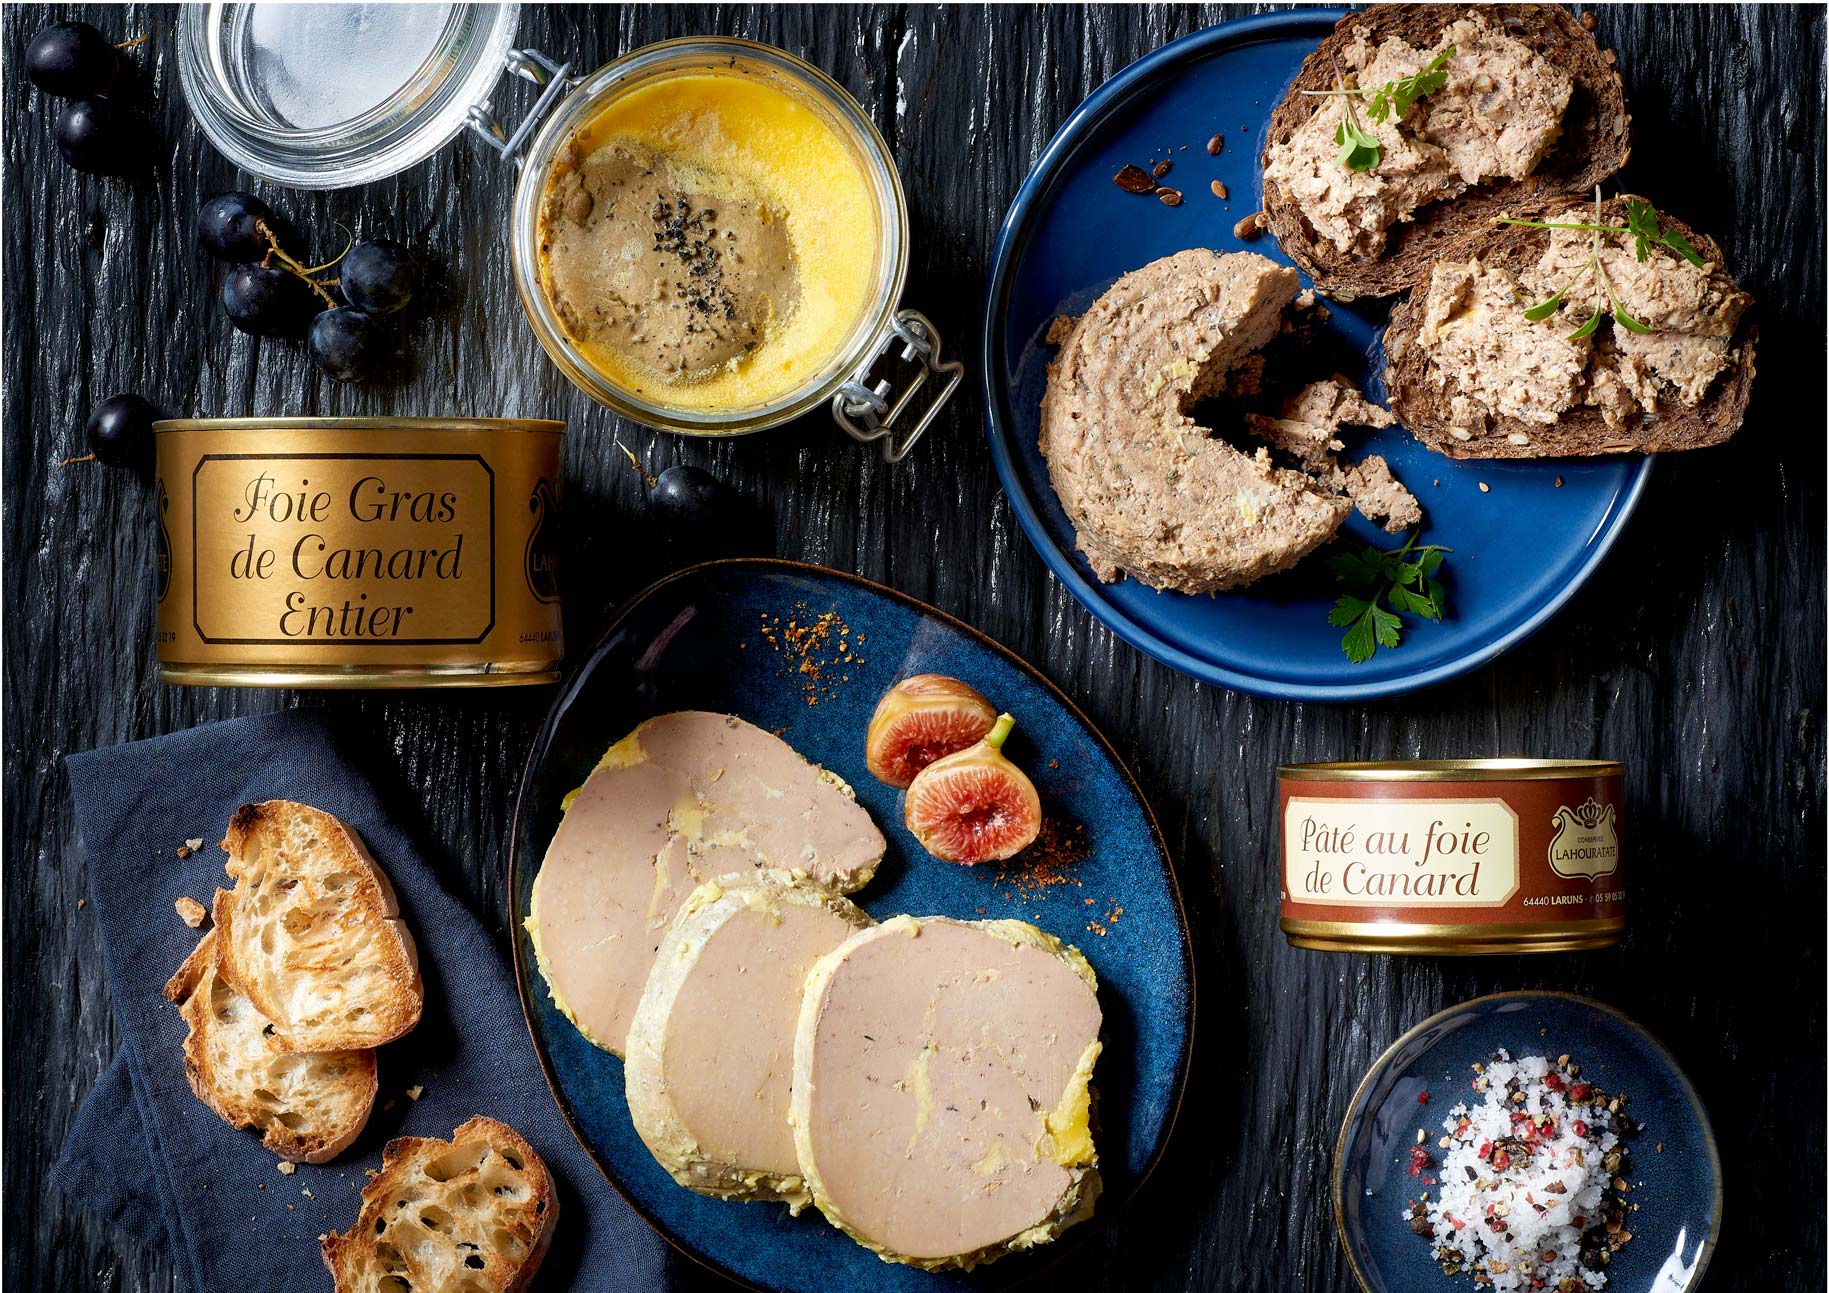 Foies gras de la Maison Lahouratate